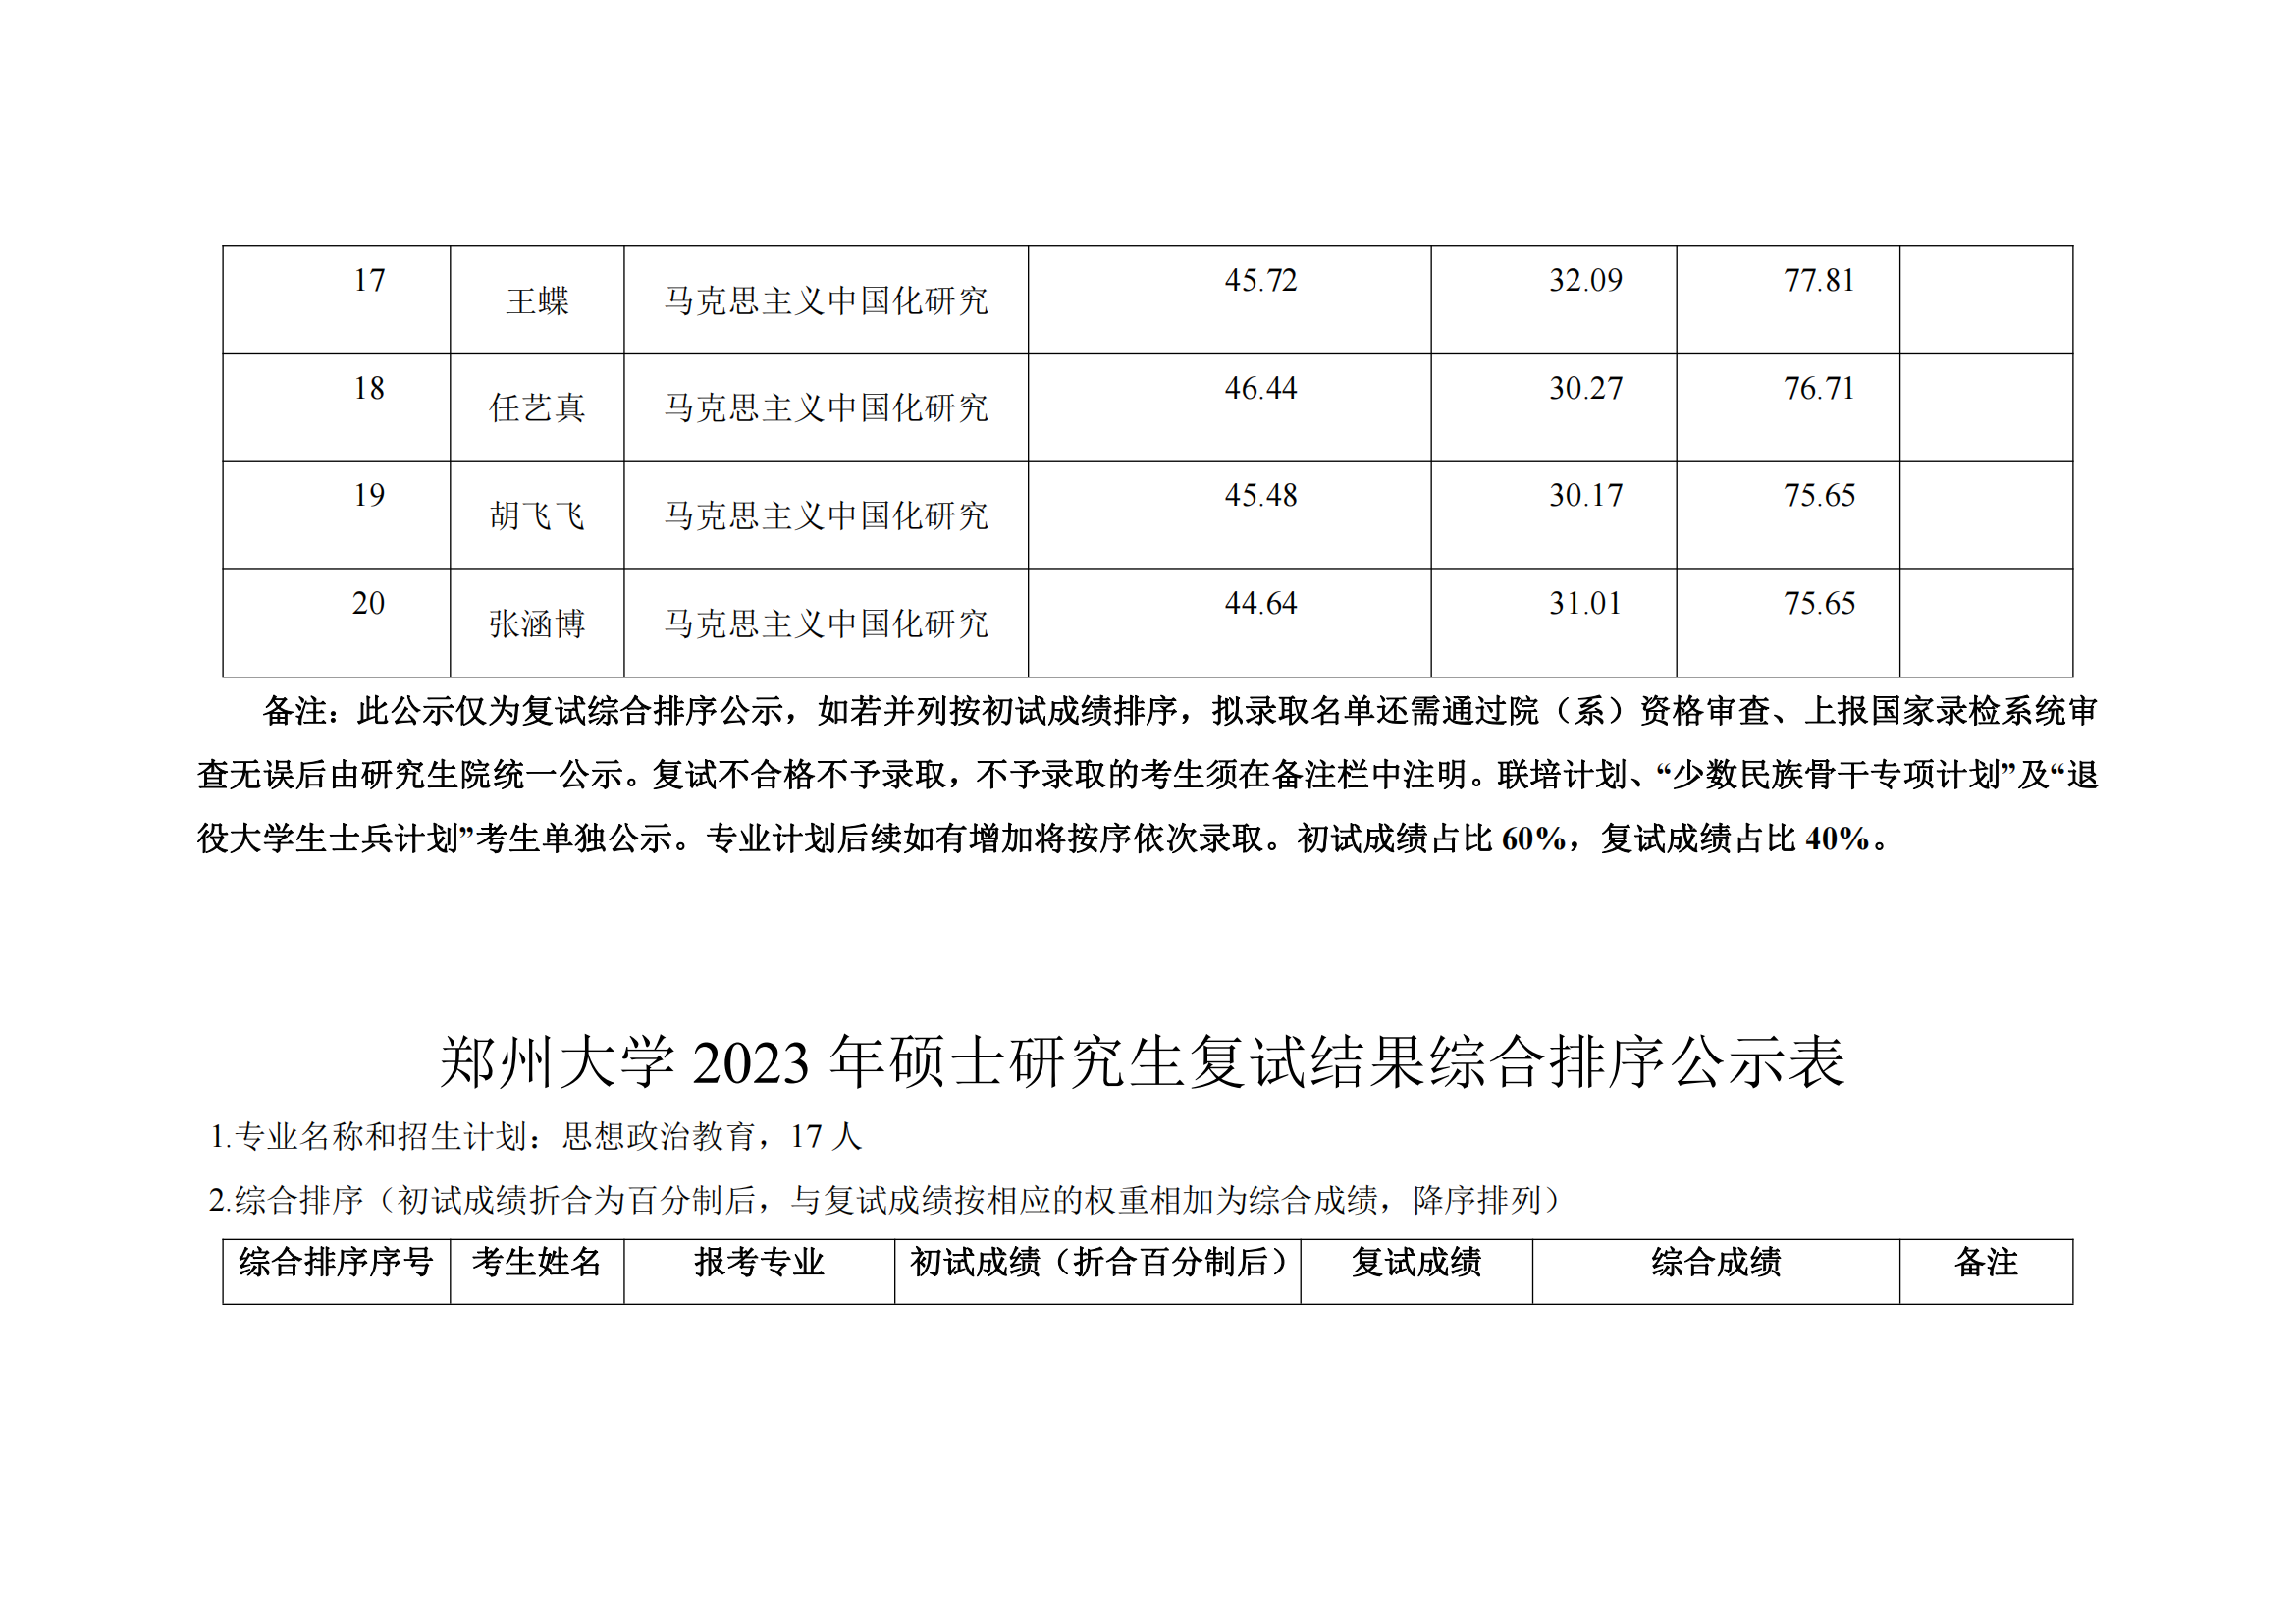 郑州大学马克思主义学院2023年硕士研究生复试结果综合排序公示表_11.png